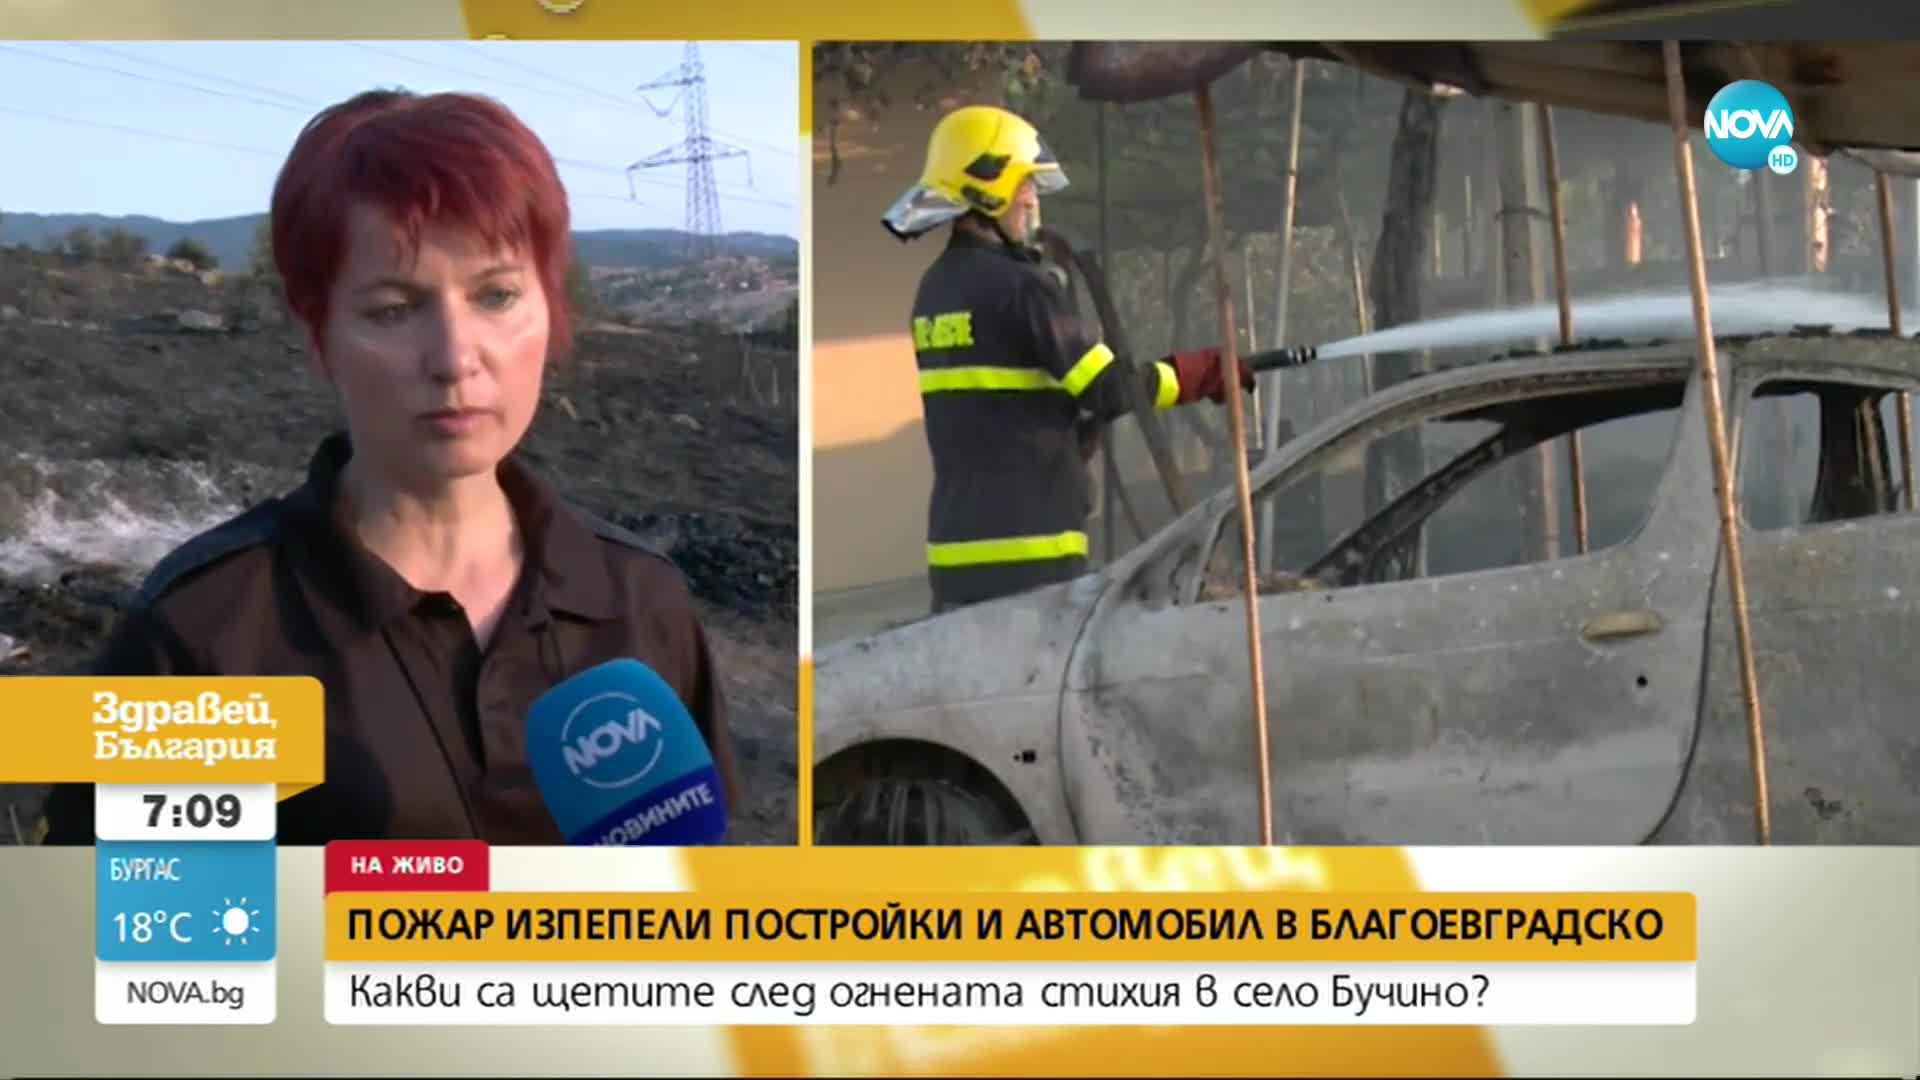 Пожар изпепели постройки и автомобил в Благоевградско